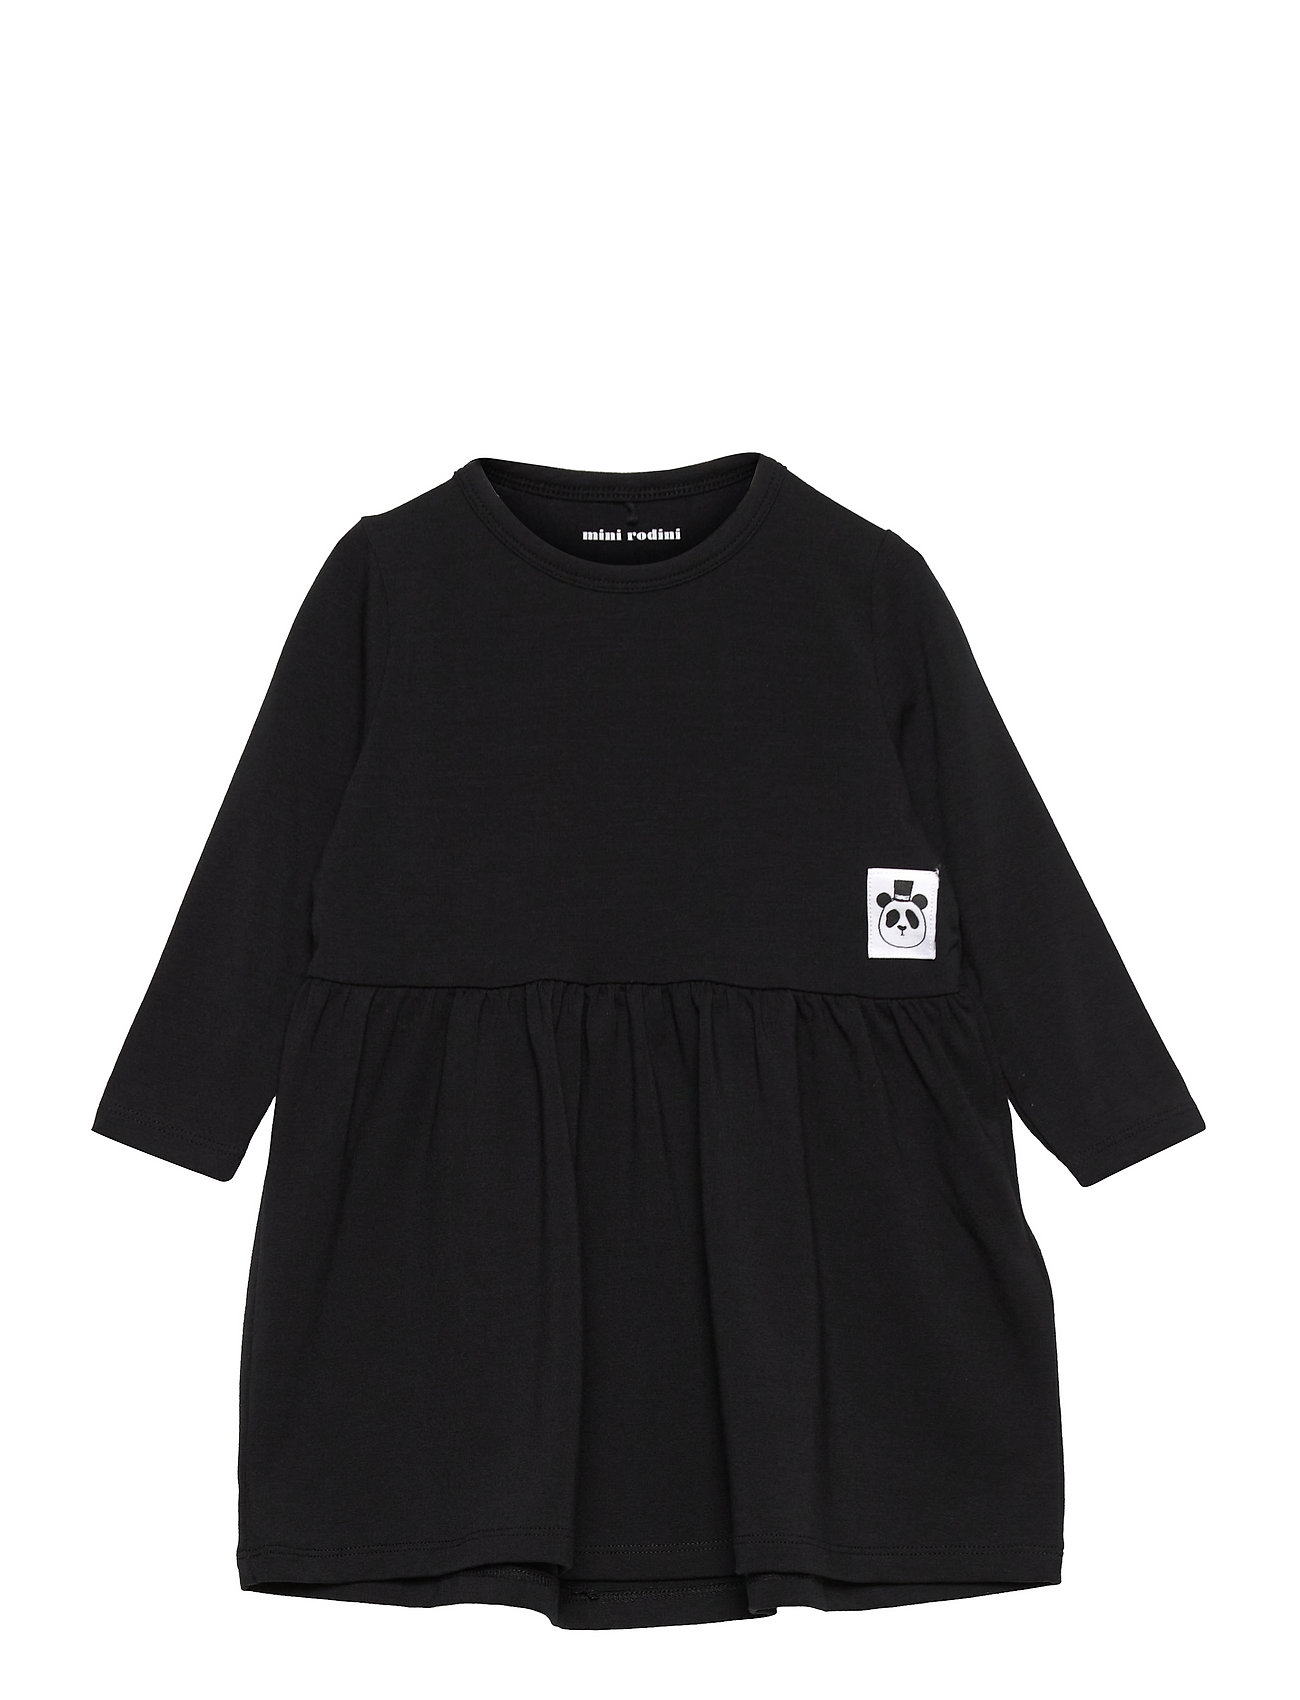 Basic Ls Dress Tencel™ Dresses & Skirts Dresses Casual Dresses Long-sleeved Casual Dresses Black Mini Rodini